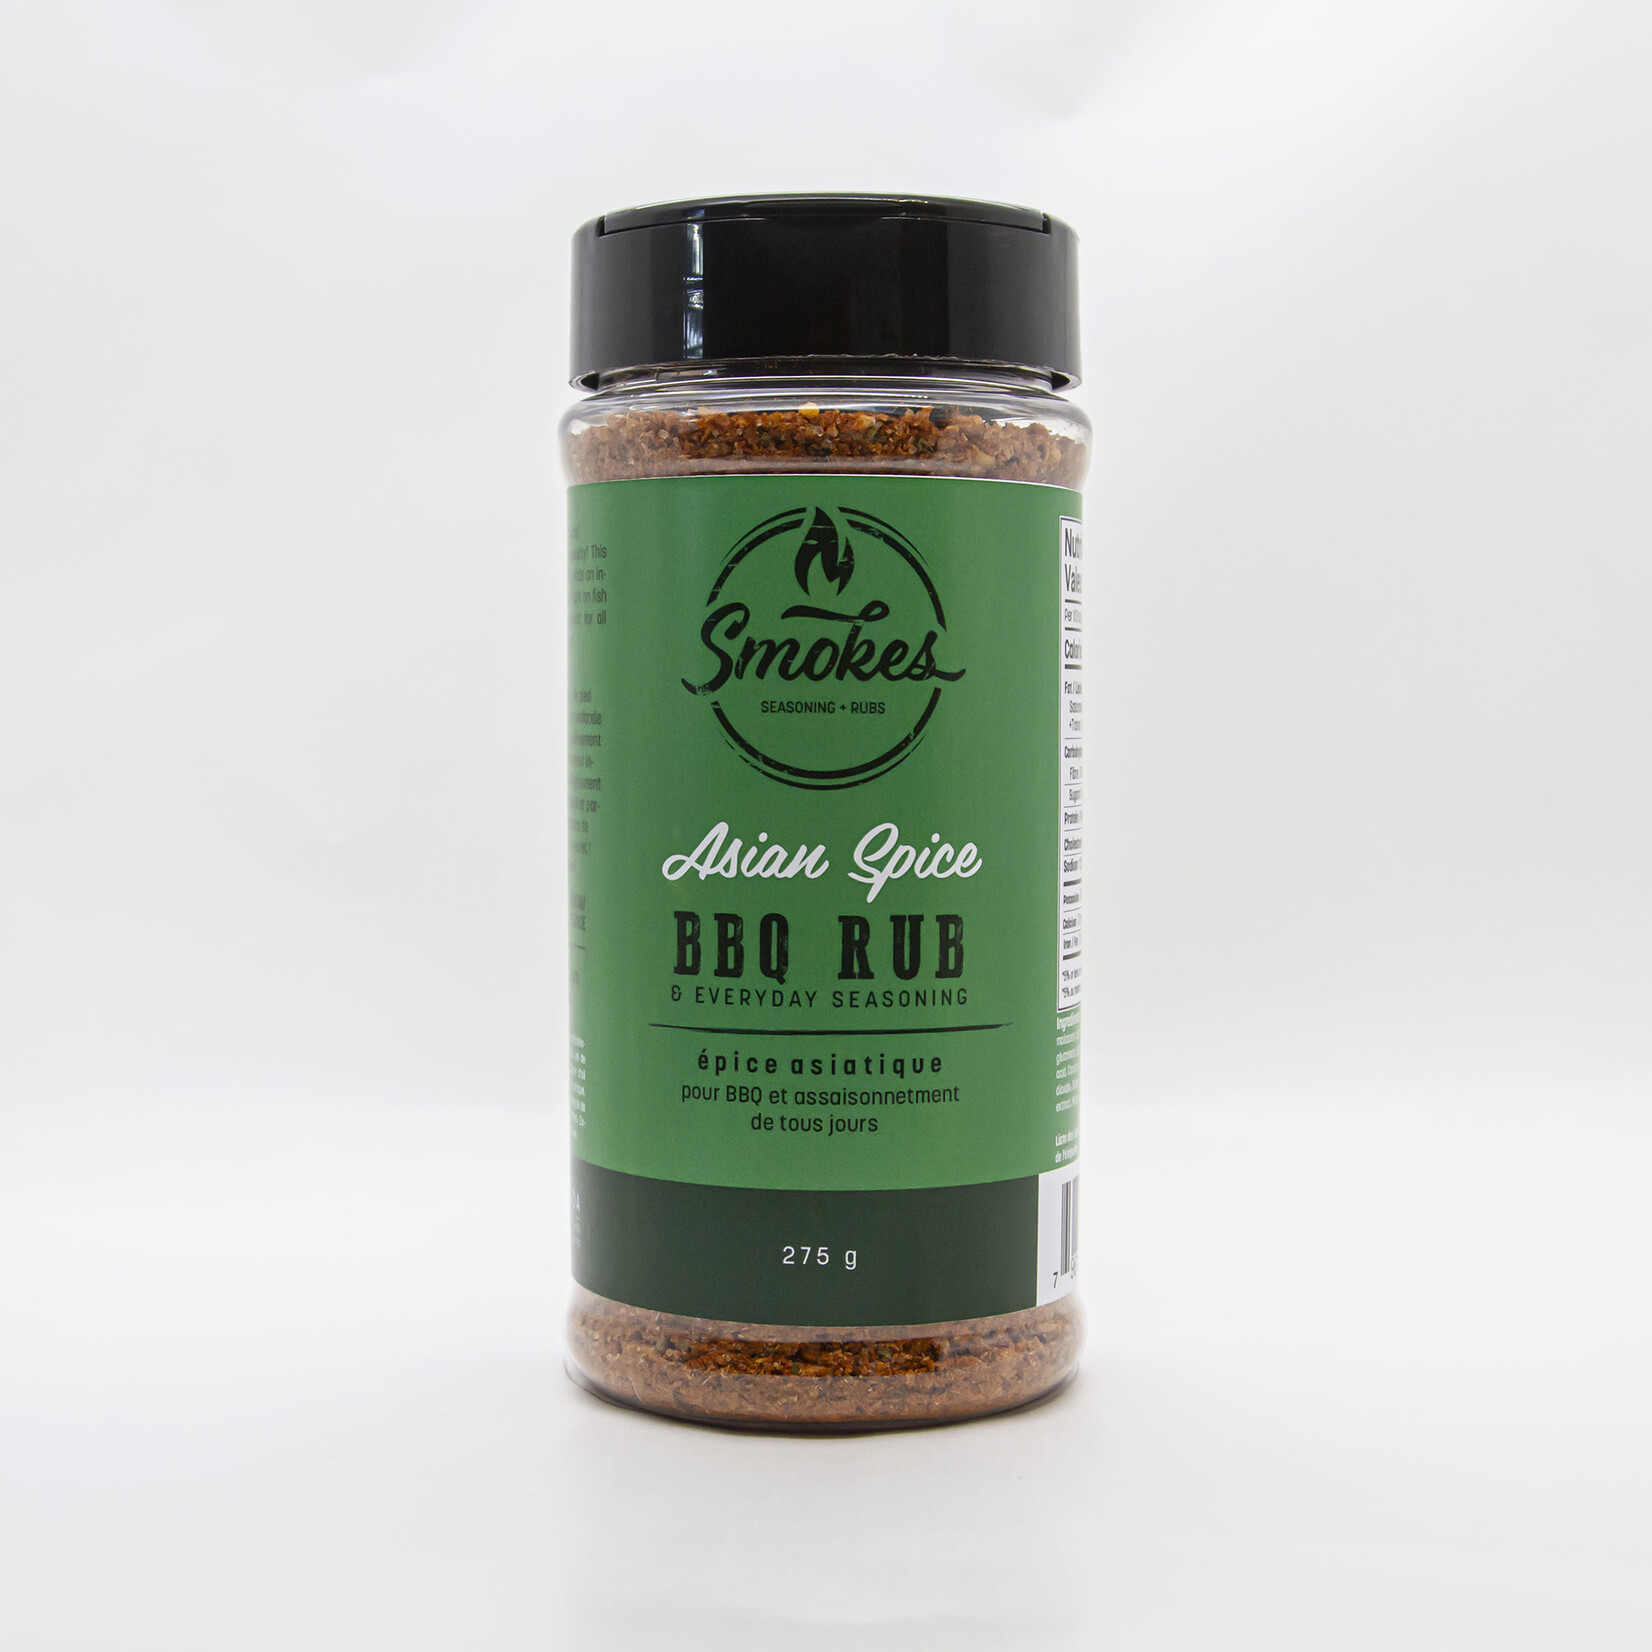 Smokes Seasoning + Rubs Asian Spice BBQ Rub 275g